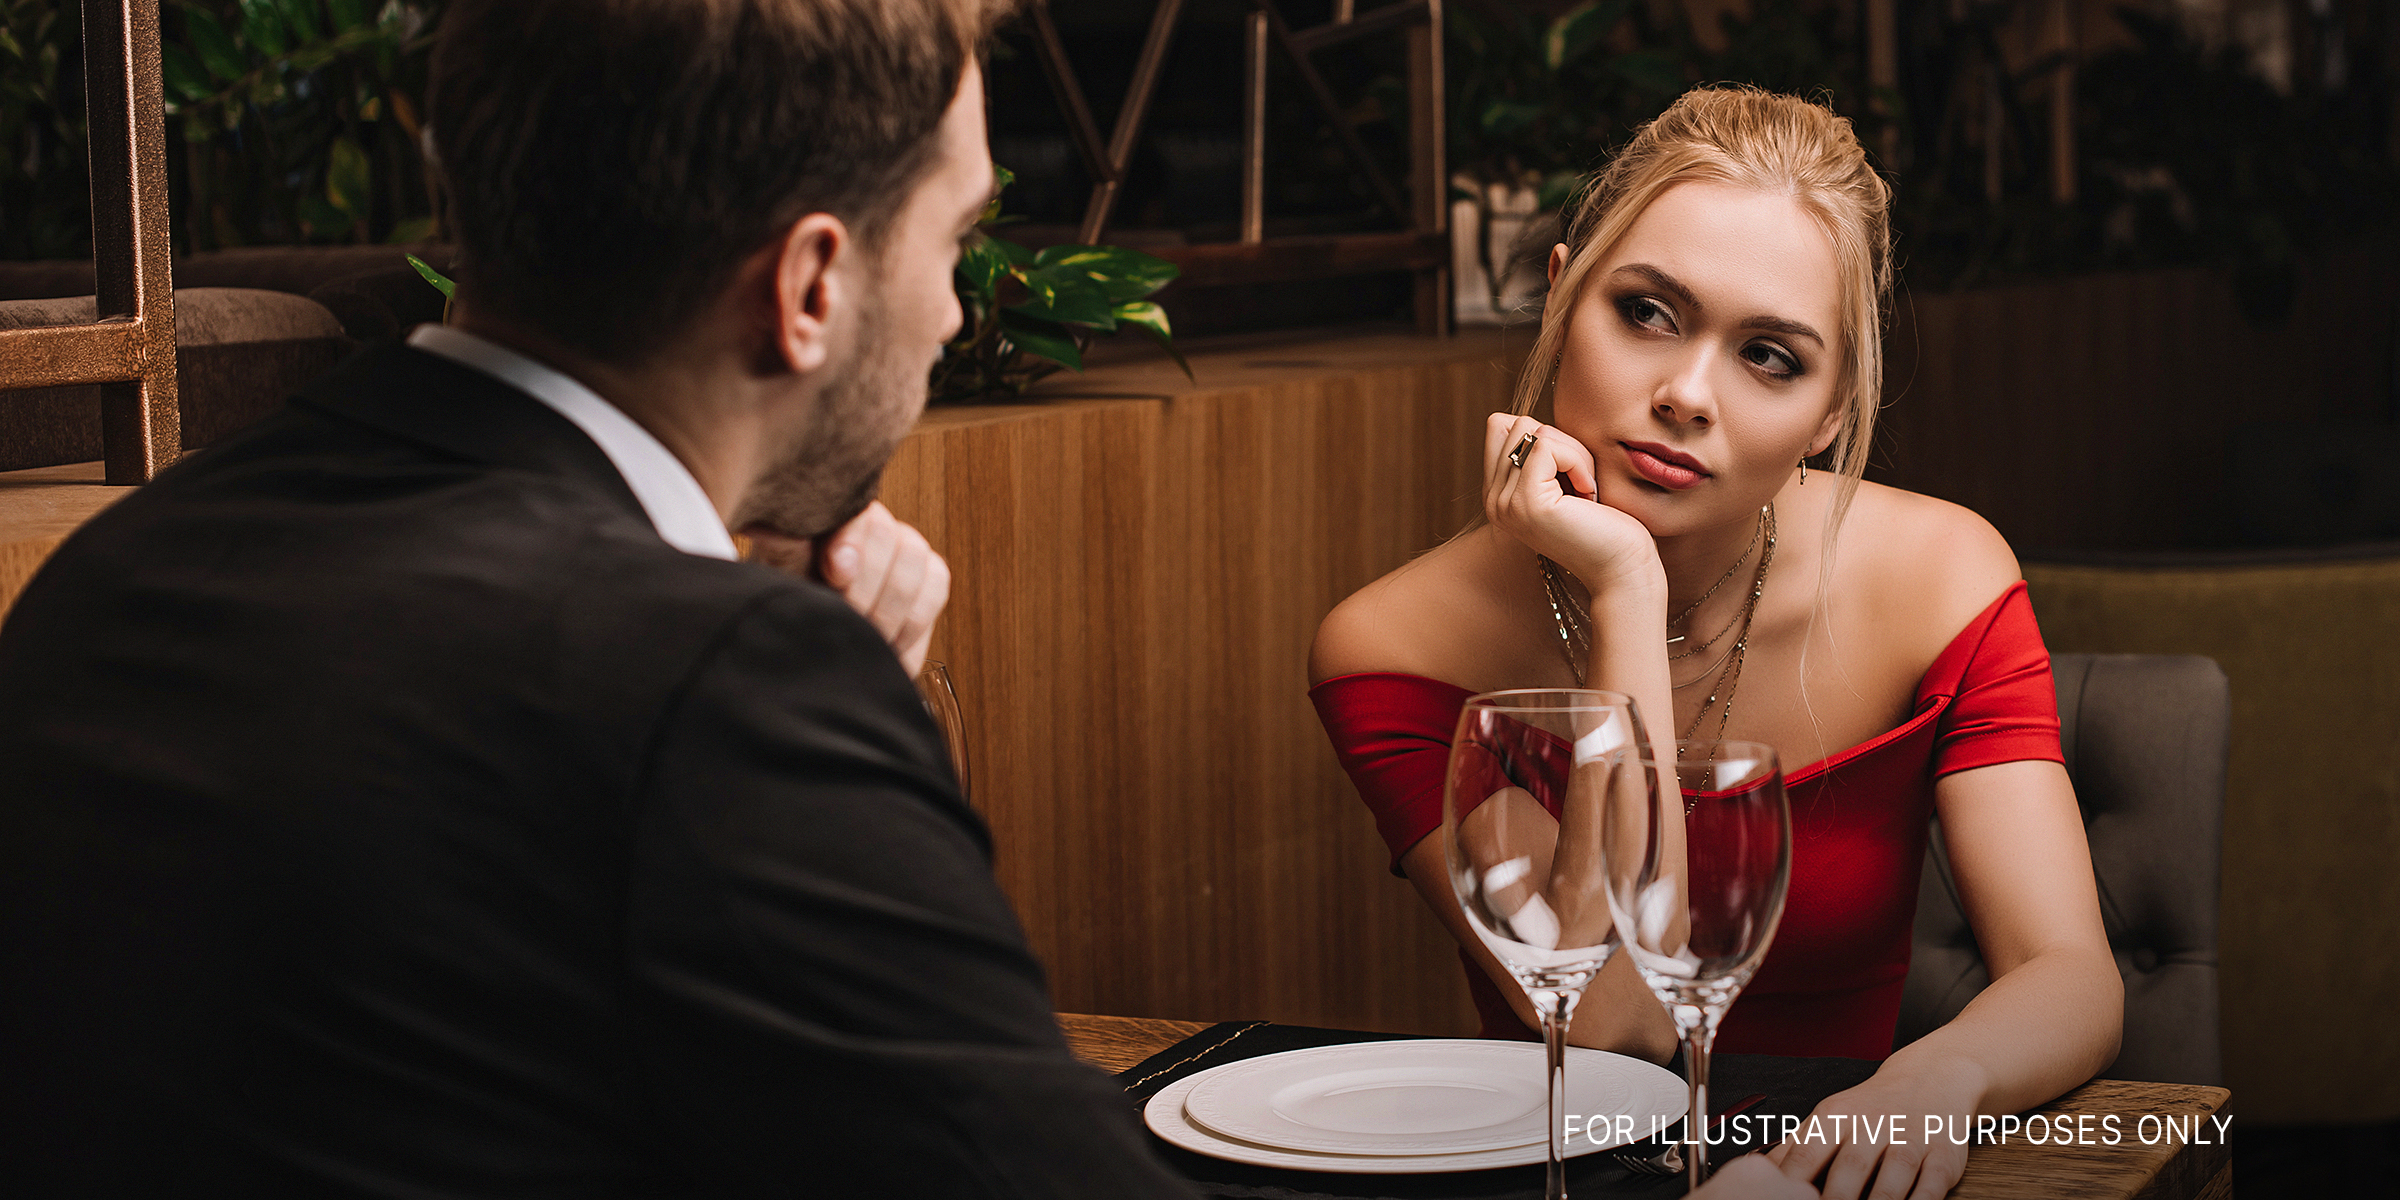 Ehepaar in einem Restaurant | Quelle: Shutterstock